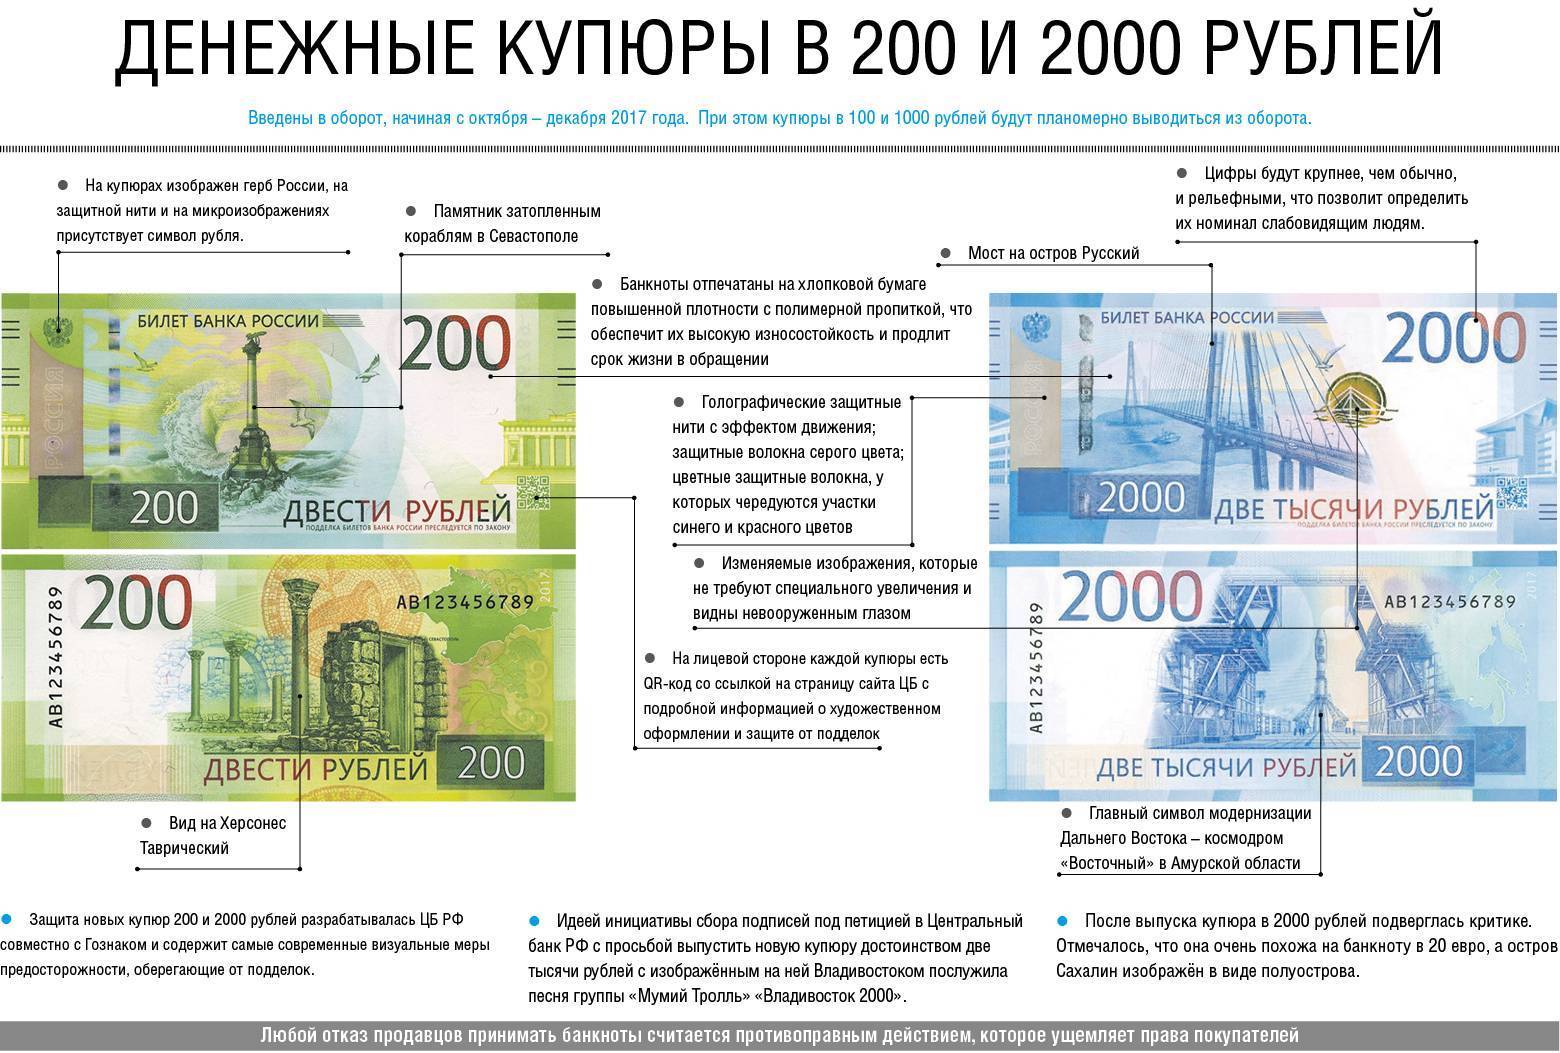 Как проверить купюры 200 и 2000 рублей на подлинность телефоном? | androidlime